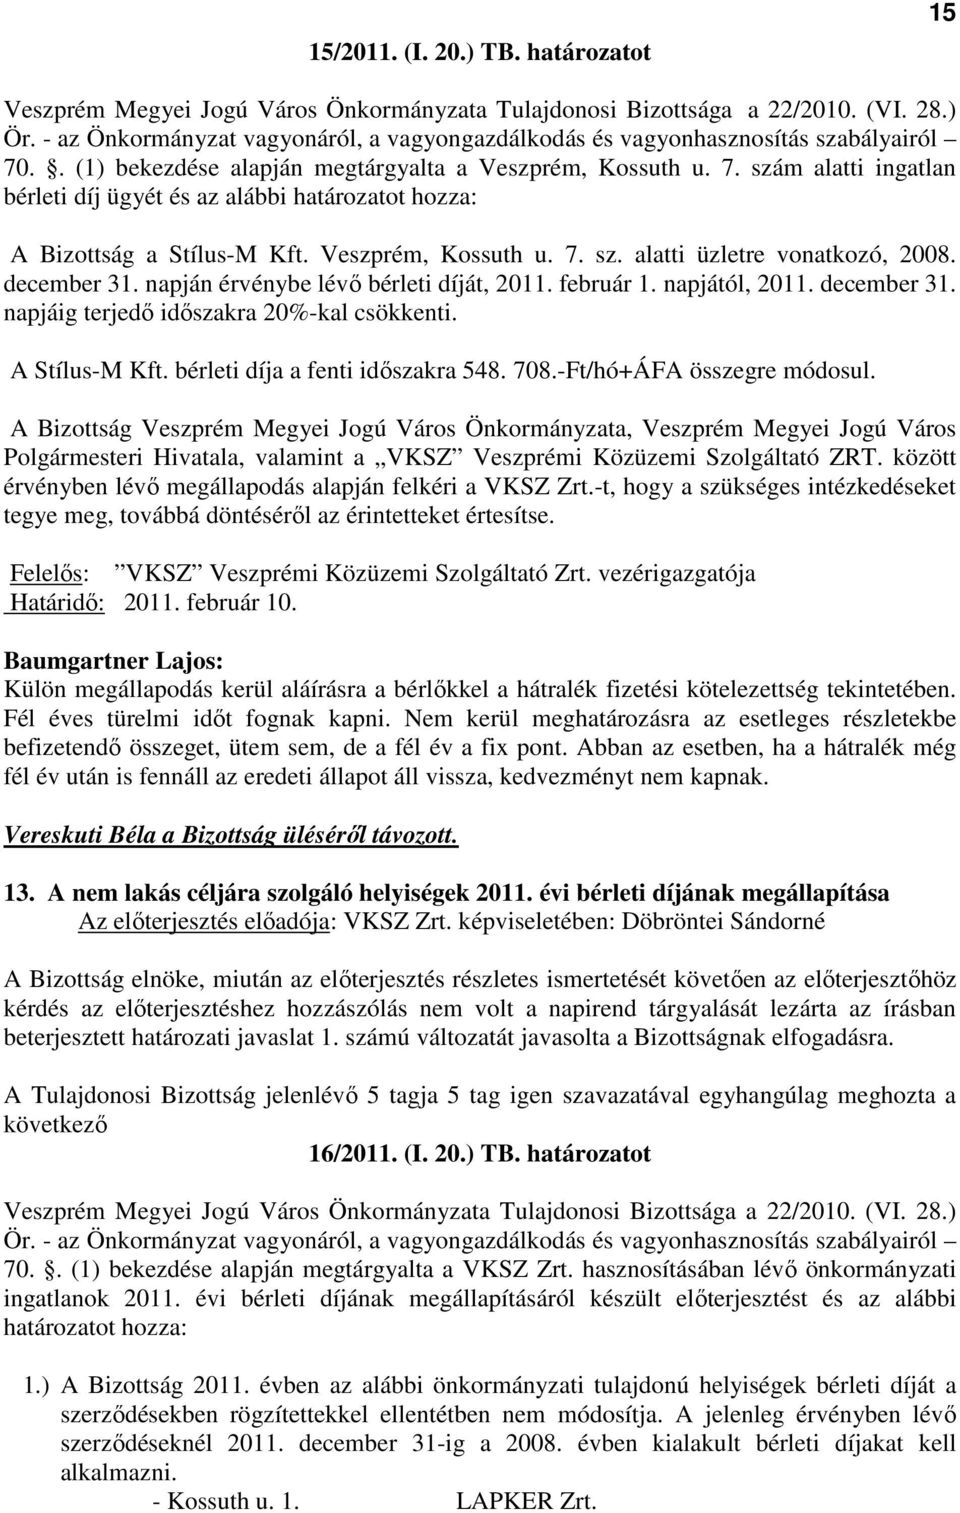 Veszprém, Kossuth u. 7. sz. alatti üzletre vonatkozó, 2008. december 31. napján érvénybe lévı bérleti díját, 2011. február 1. napjától, 2011. december 31. napjáig terjedı idıszakra 20%-kal csökkenti.